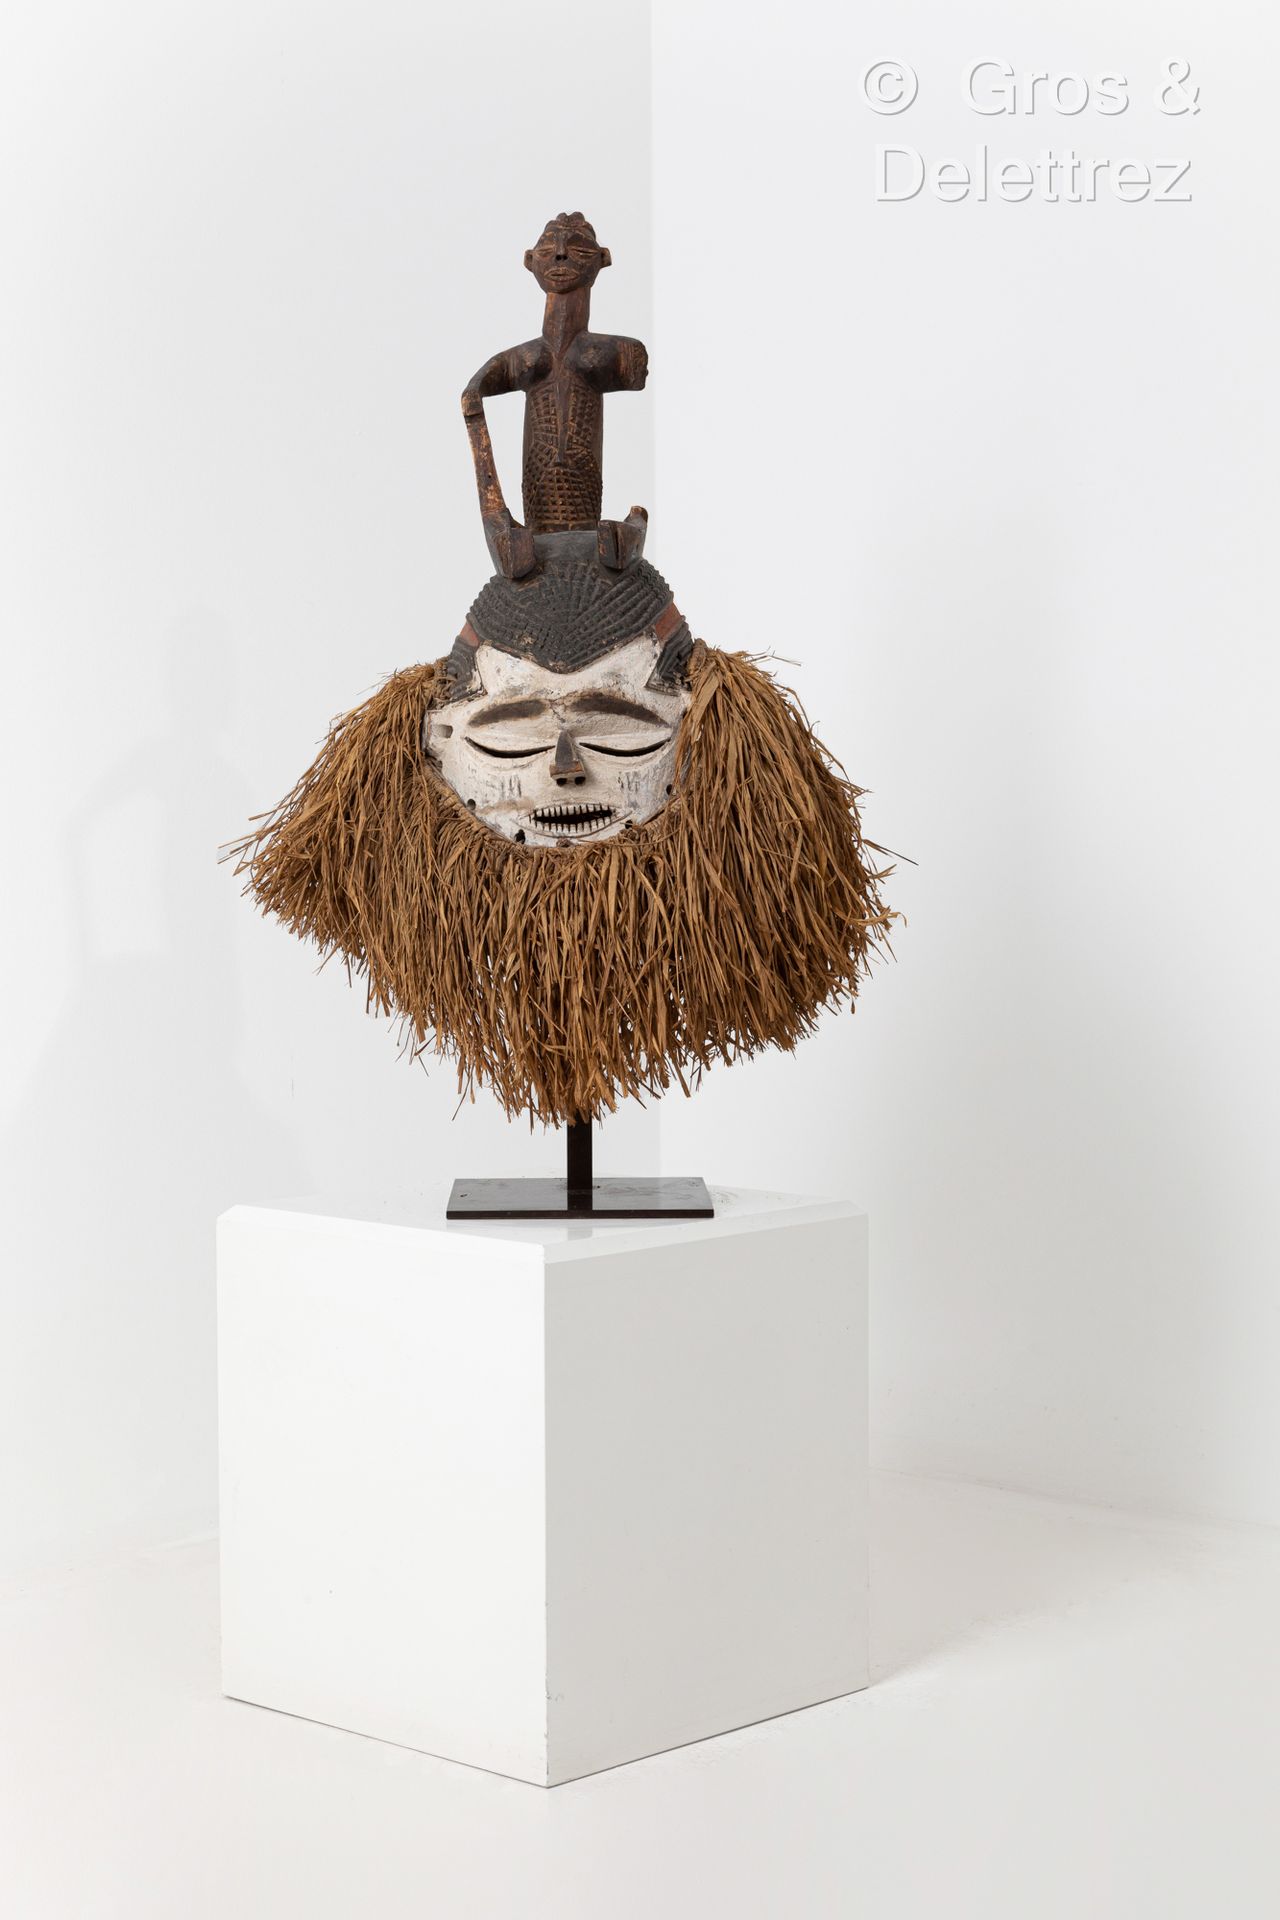 Null *面具。
苏库人，刚果民主共和国。
19世纪末-20世纪初。
木材，颜料，高岭土，酒椰树。
高度：73厘米

出处：
私人收藏，布鲁塞尔